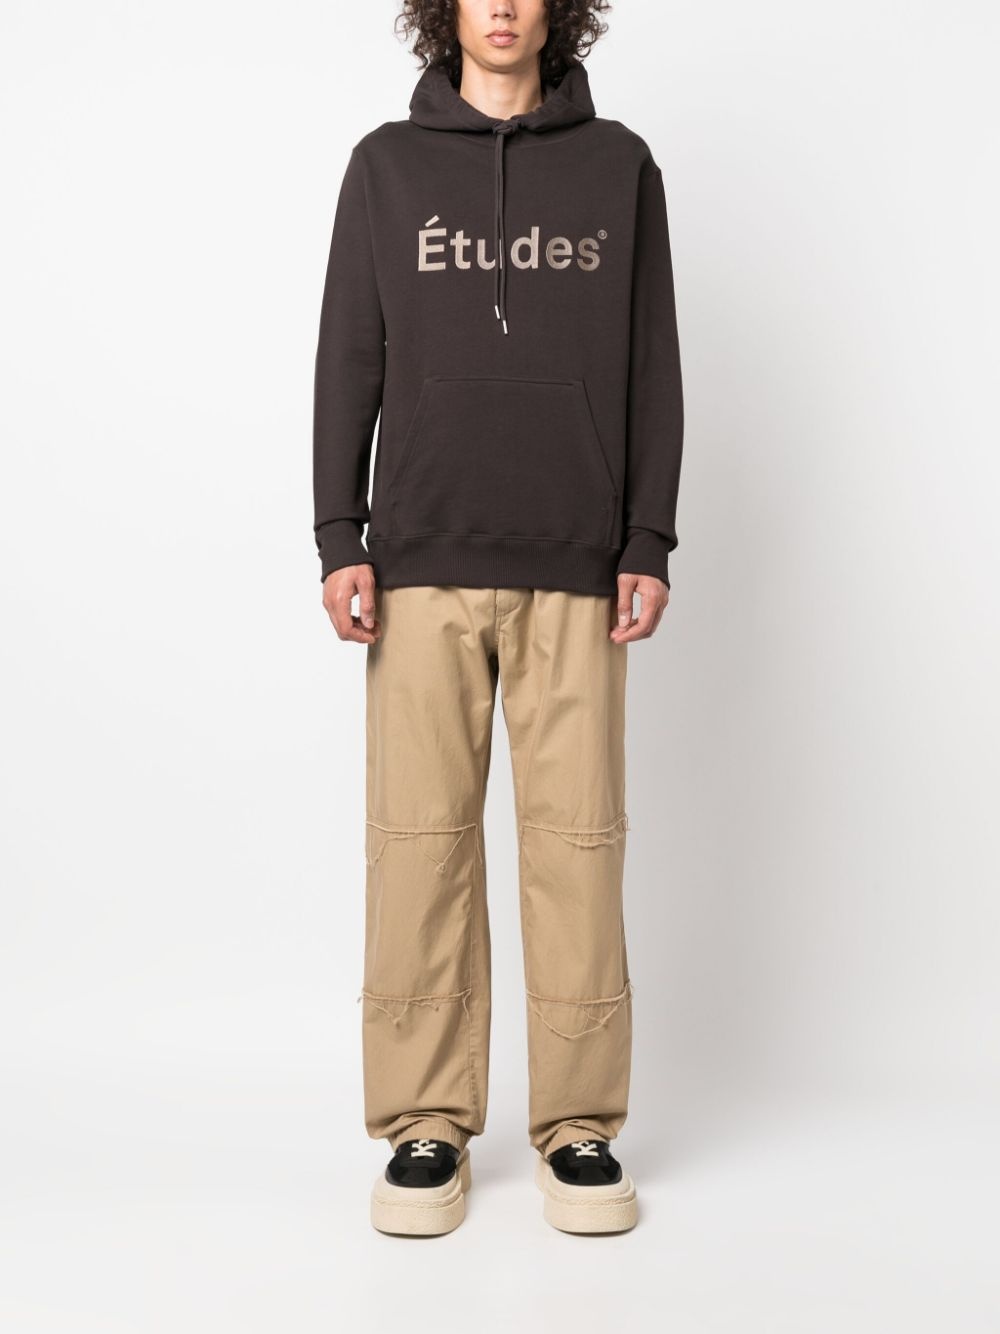 Klein Études organic cotton hoodie - 2